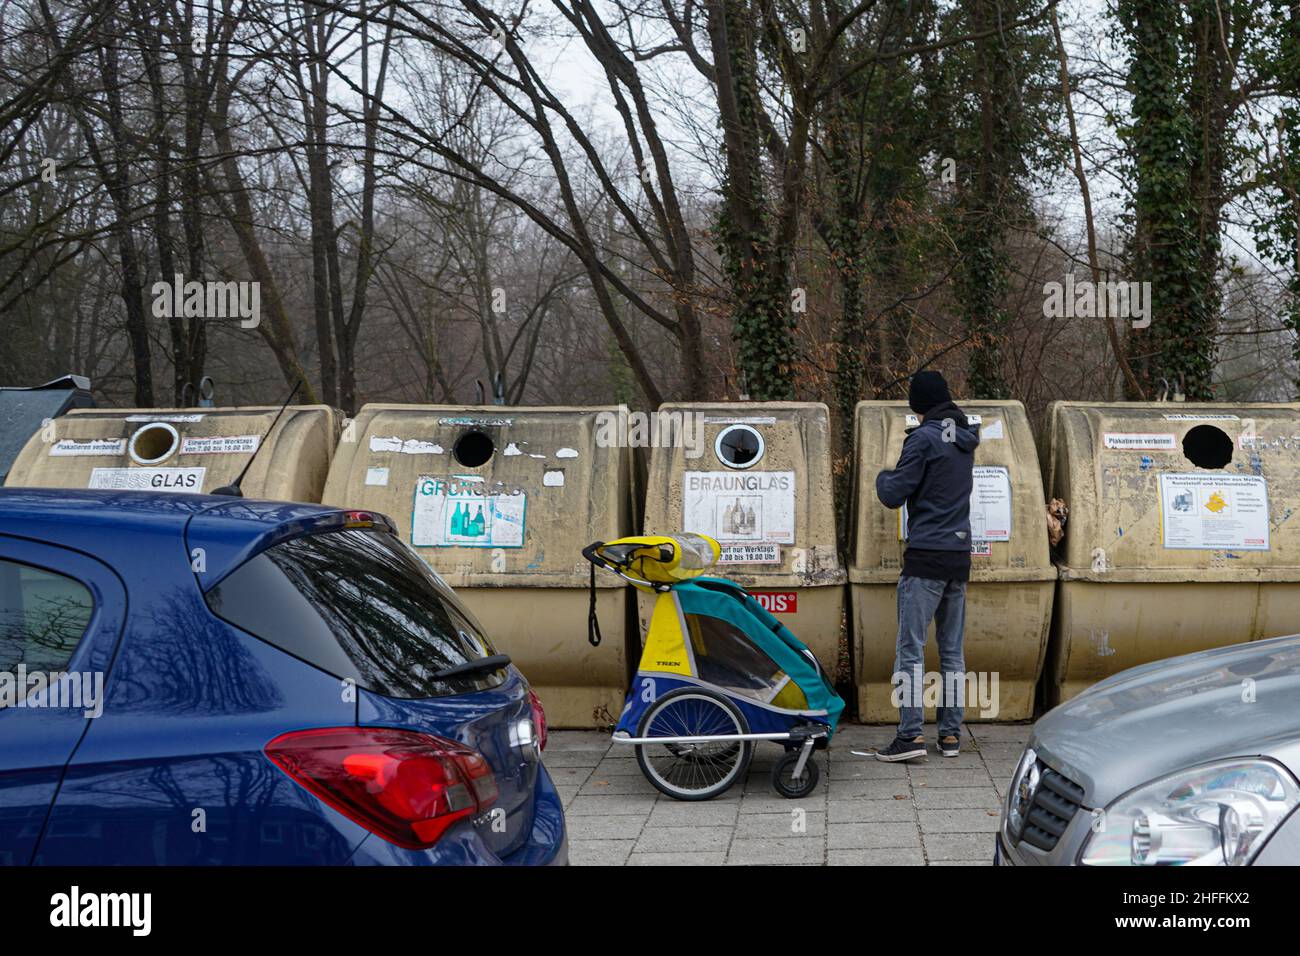 Un joven ha traído vacíos a los contenedores de reciclaje de su vecindario con un carro para bebés y les lanza botellas vacías. Foto de stock